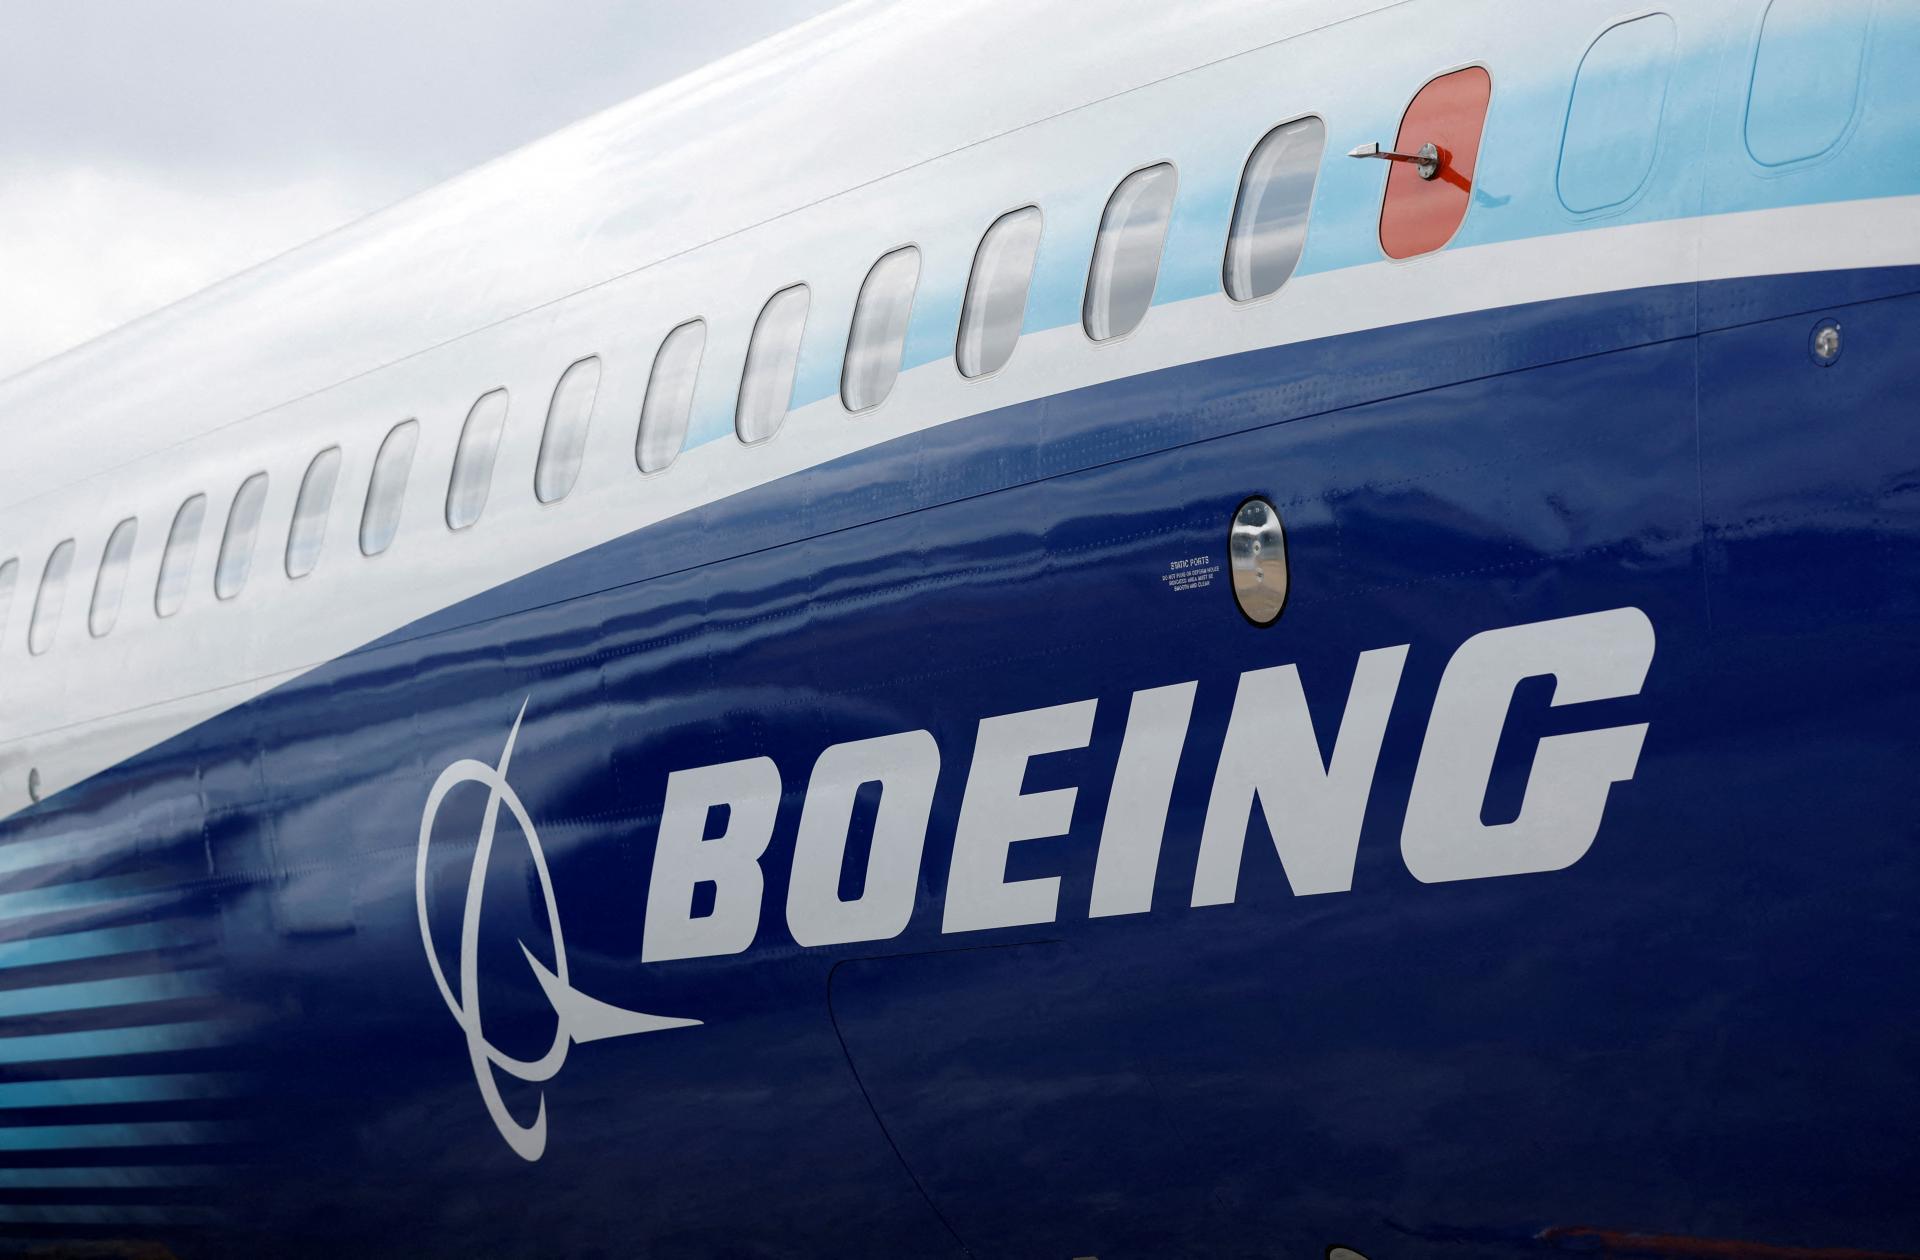 Nečakane zomrel druhý whistleblower, ktorý svedčil proti spoločnosti Boeing